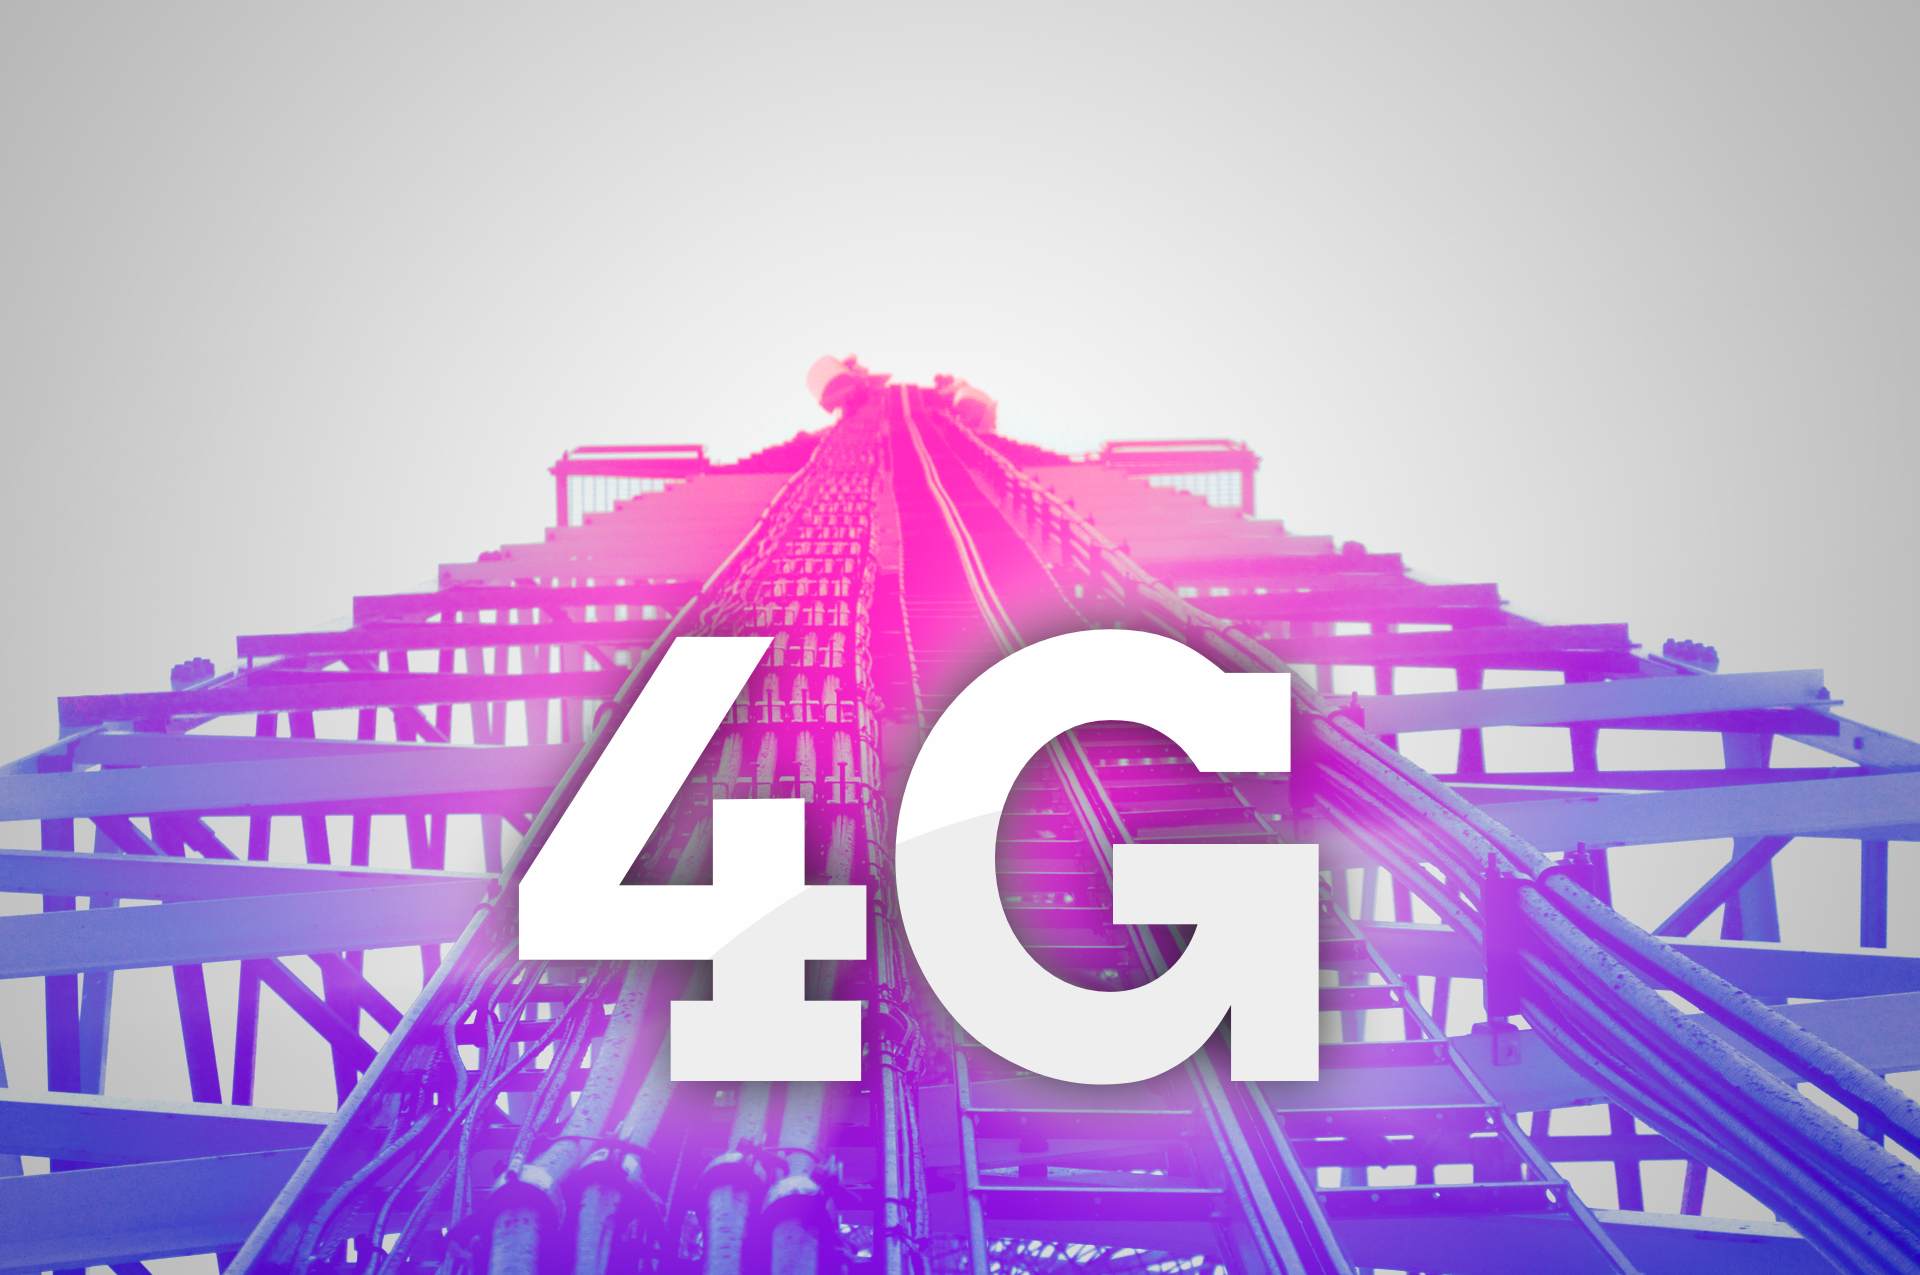 4 internet 4. 4g LTE. 4g интернет. Сеть 4g. Мобильные сети 4g.